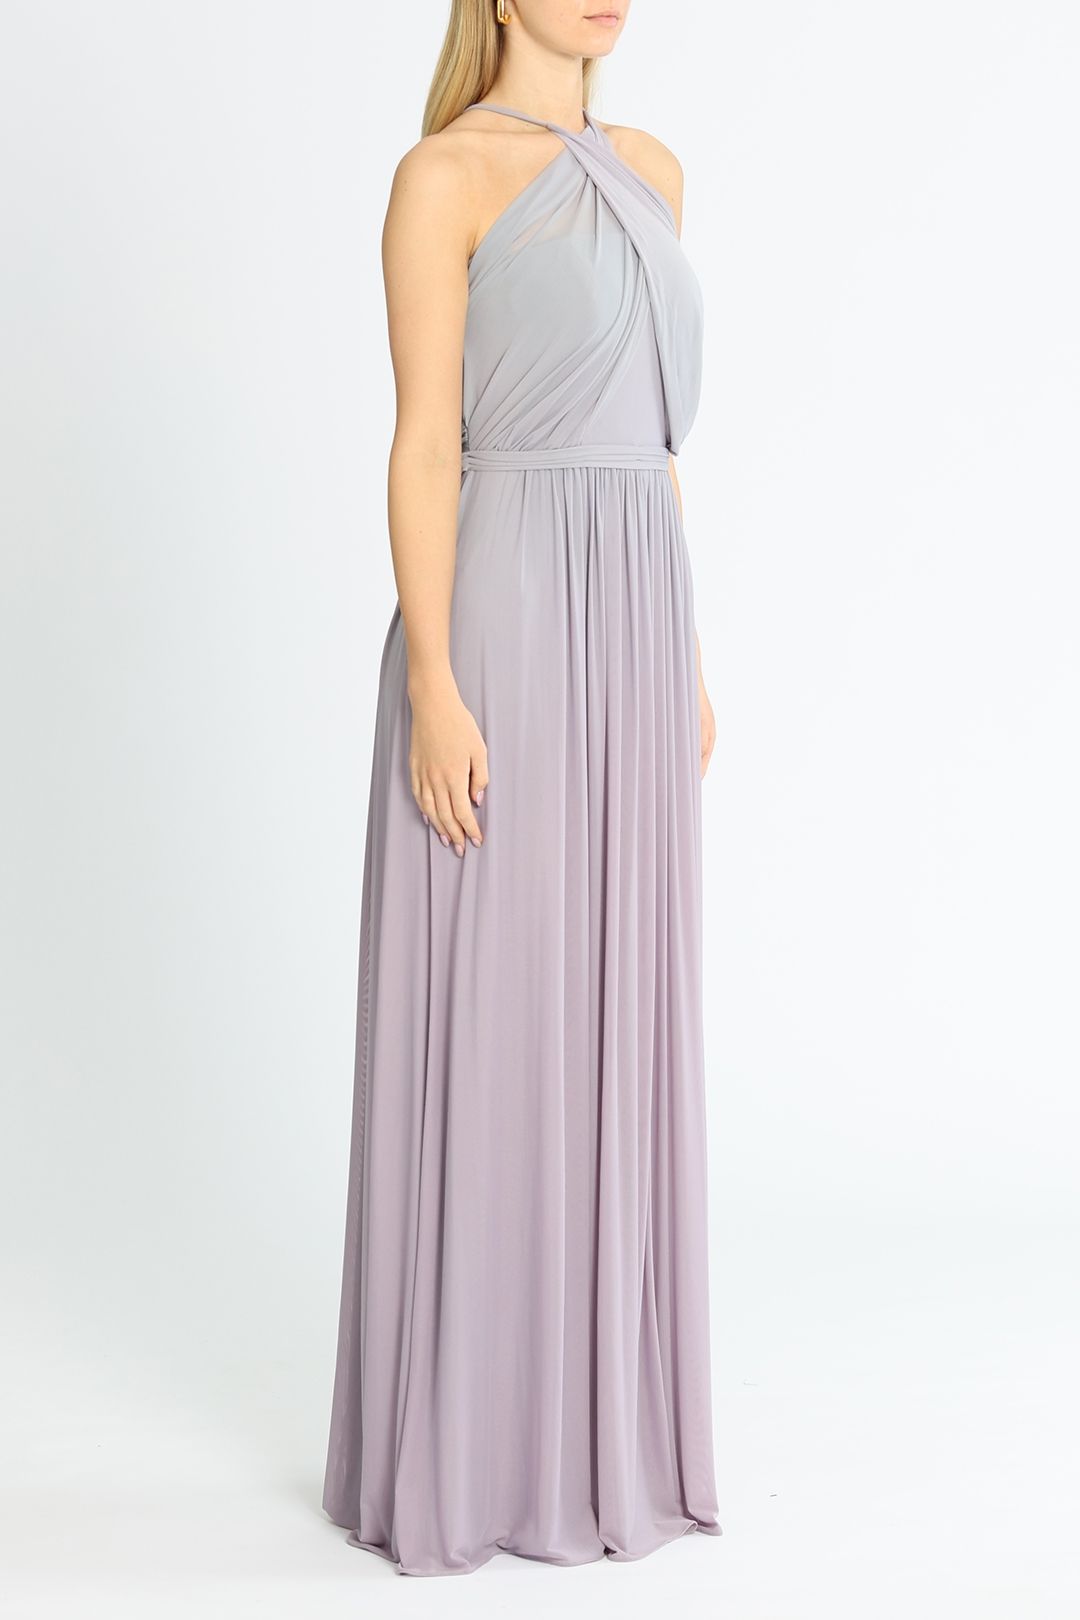 Tania Olsen Andie Gown Lavender Floorlength